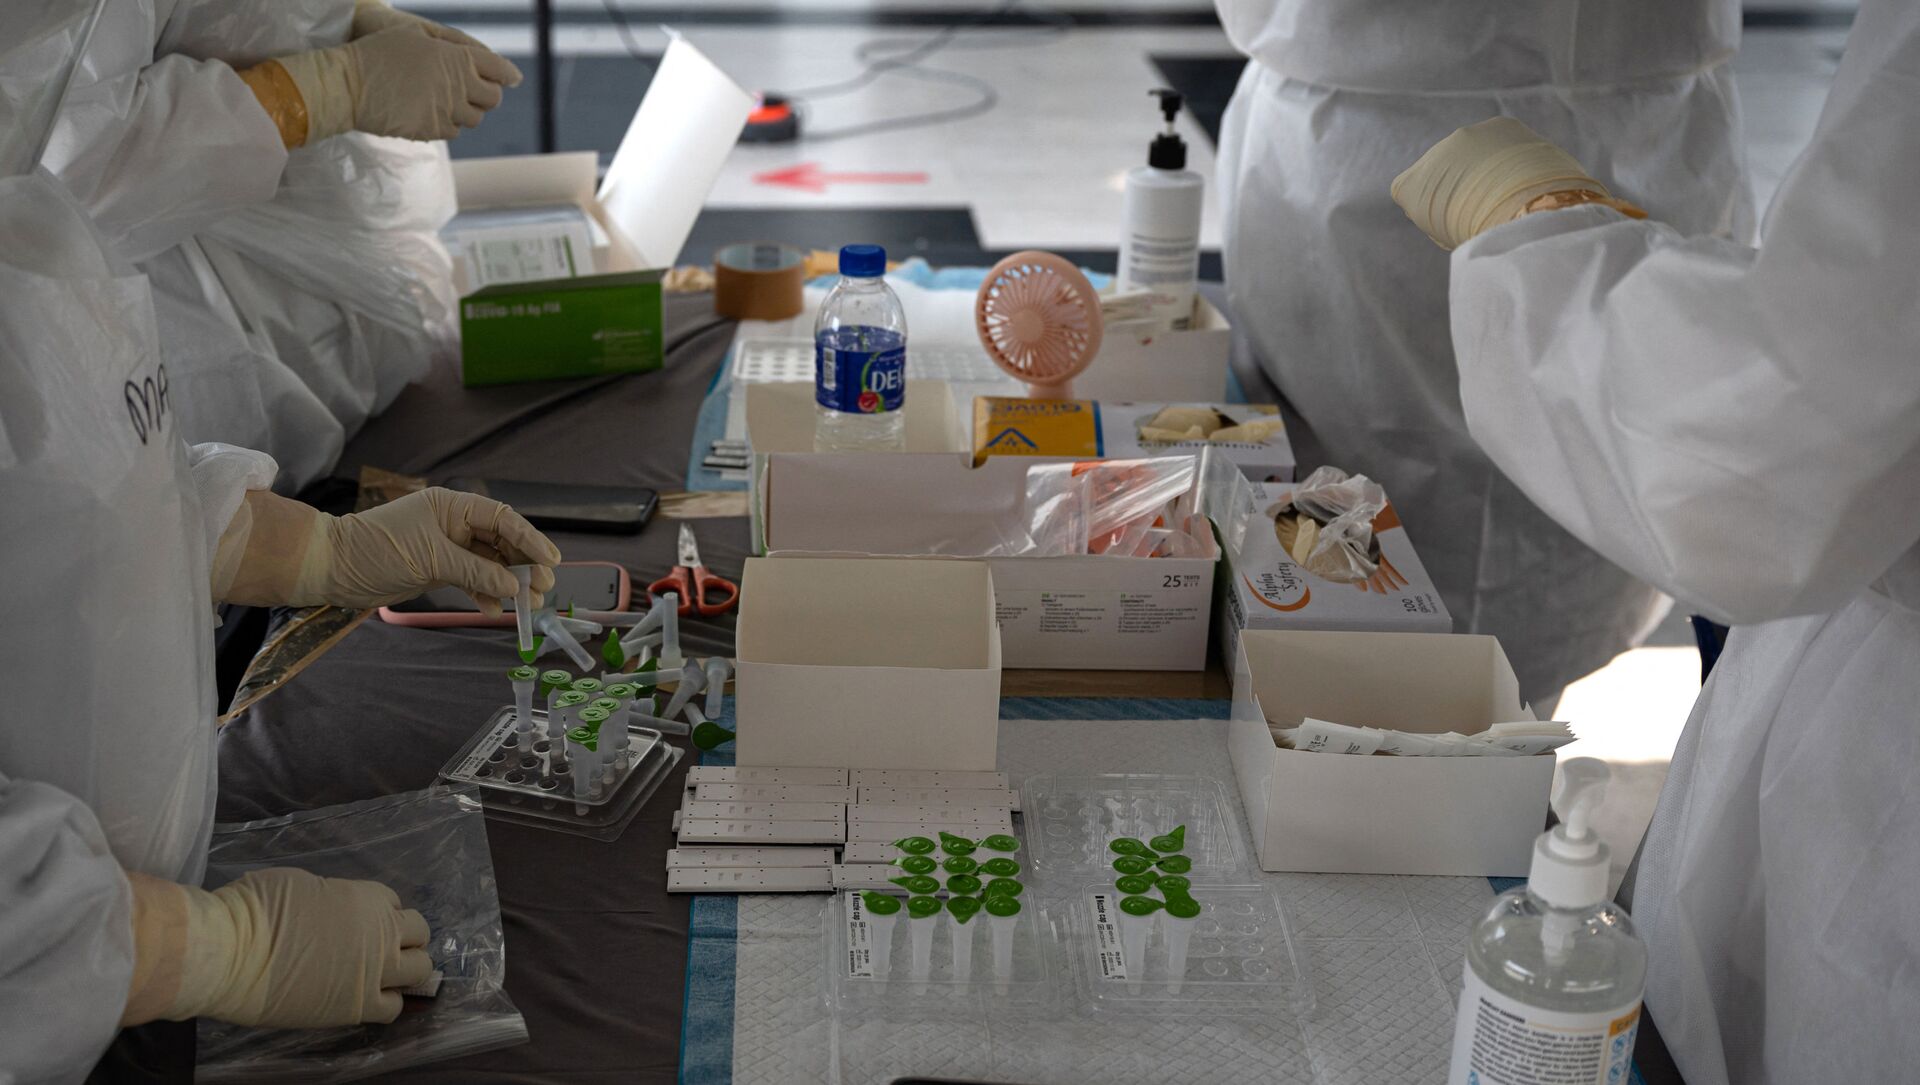 Медицинский персонал в защитных костюмах готовит наборы для тестирования на полигоне для тестирования на коронавирус Covid-19 в Шах-Аламе, на окраине Куала-Лумпура - Sputnik Аҧсны, 1920, 26.02.2021